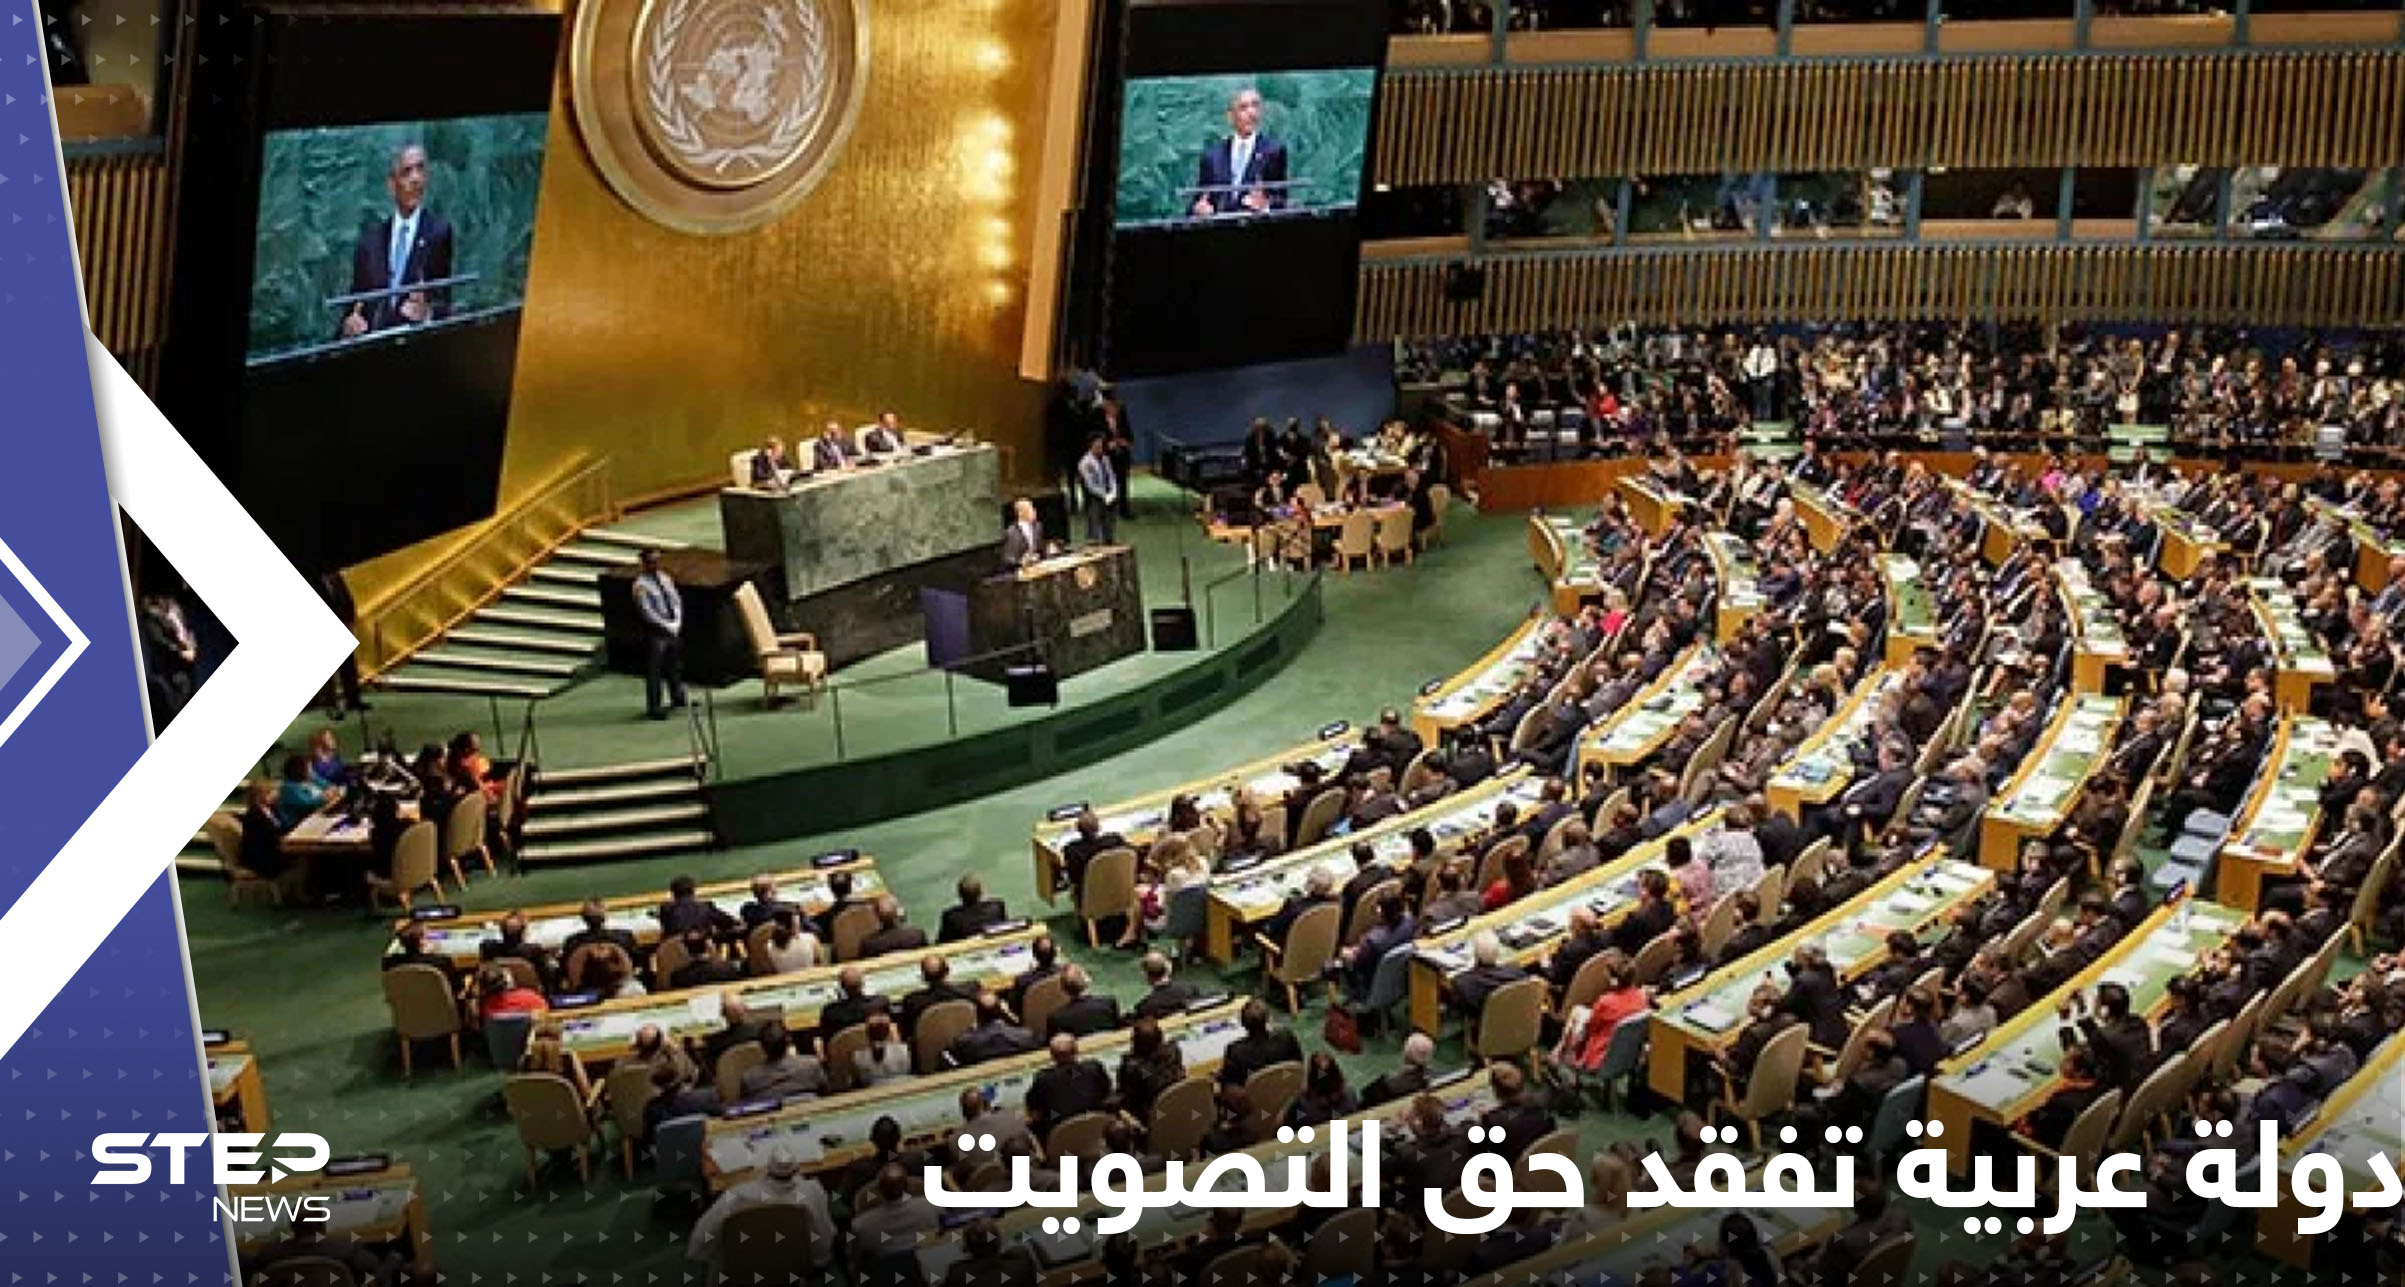 دولة عربية تفقد حق التصويت بالأمم المتحدة لتزداد عزلتها